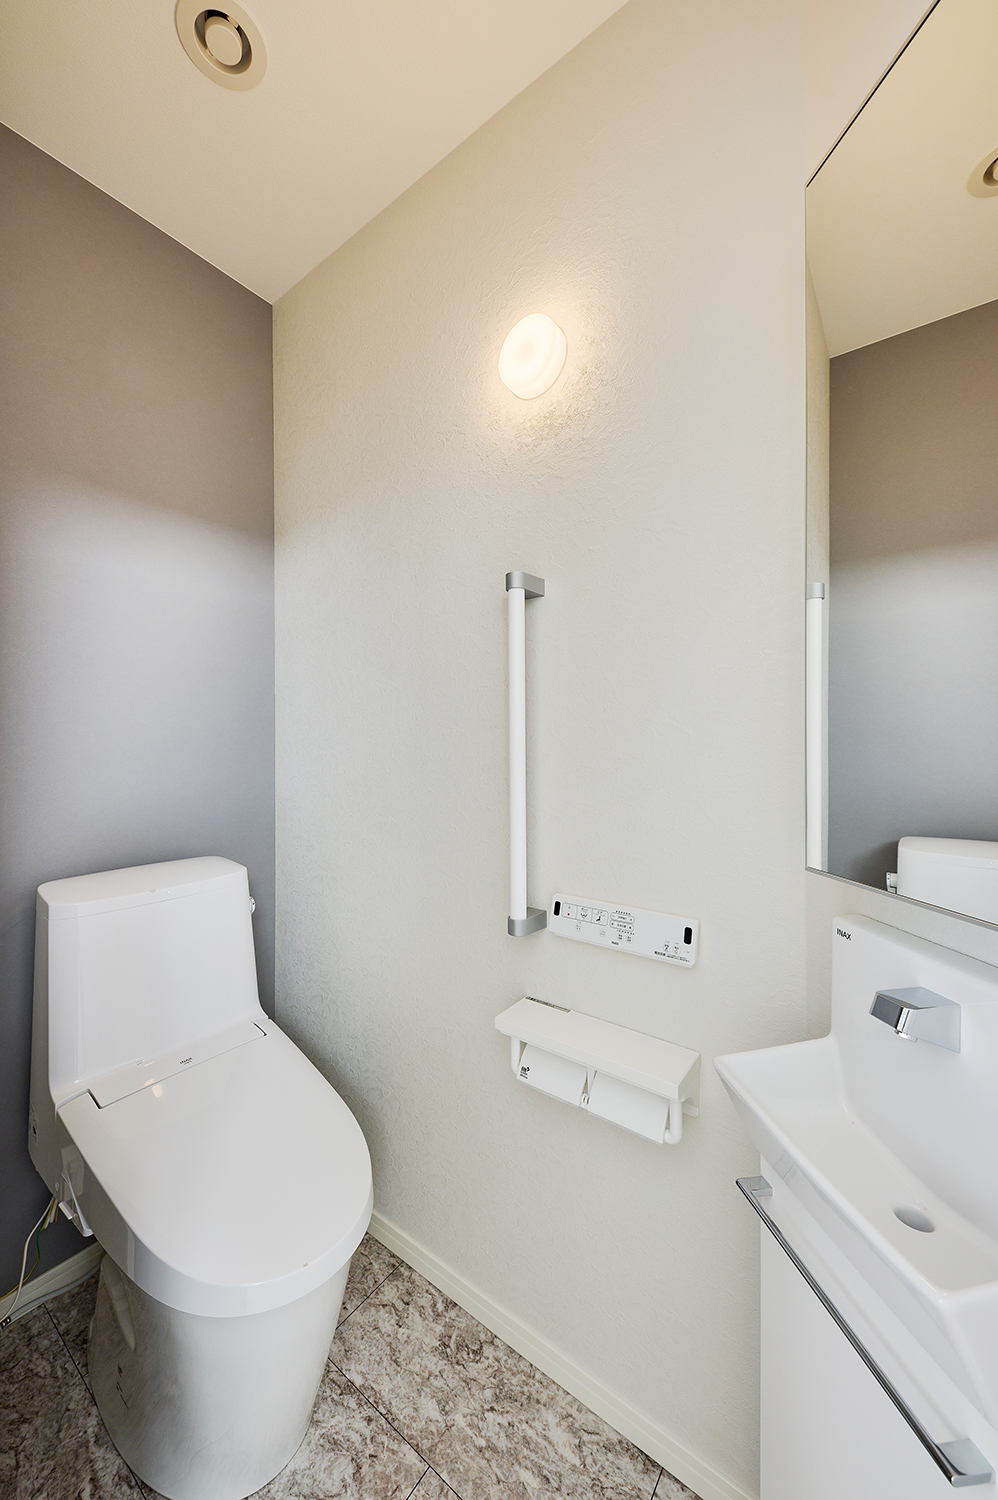 T-1／トイレは温かな照明が落ち着きを与えてくれます。手すりが付いているからバリアフリーにも配慮された設計です。